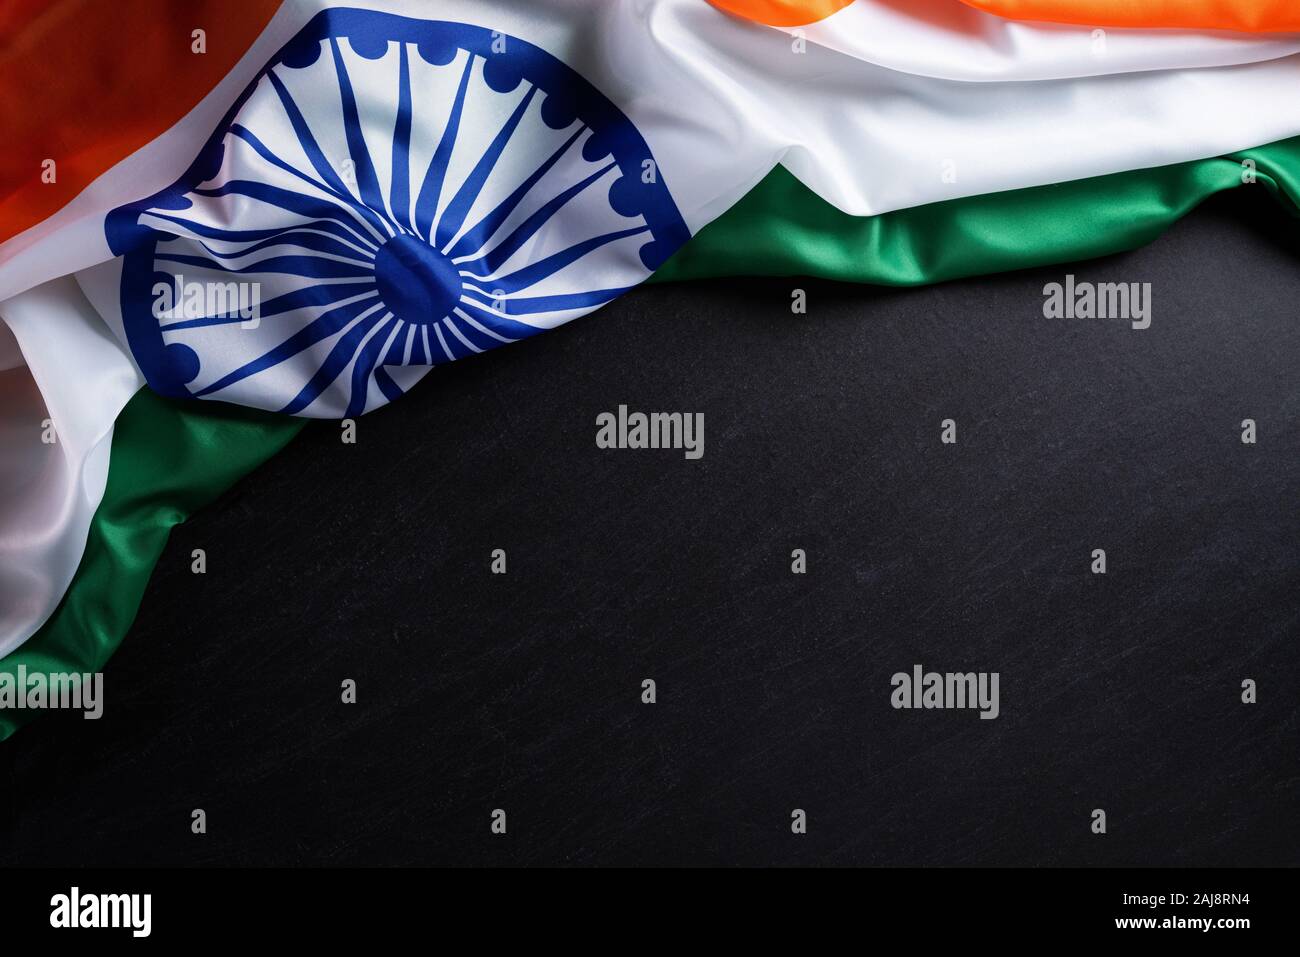 Cờ Ấn Độ là biểu tượng của sự tự do và độc lập. Hãy khám phá bức ảnh của chúng tôi với hình ảnh cờ Ấn Độ tuyệt đẹp làm nền đẹp nhất.